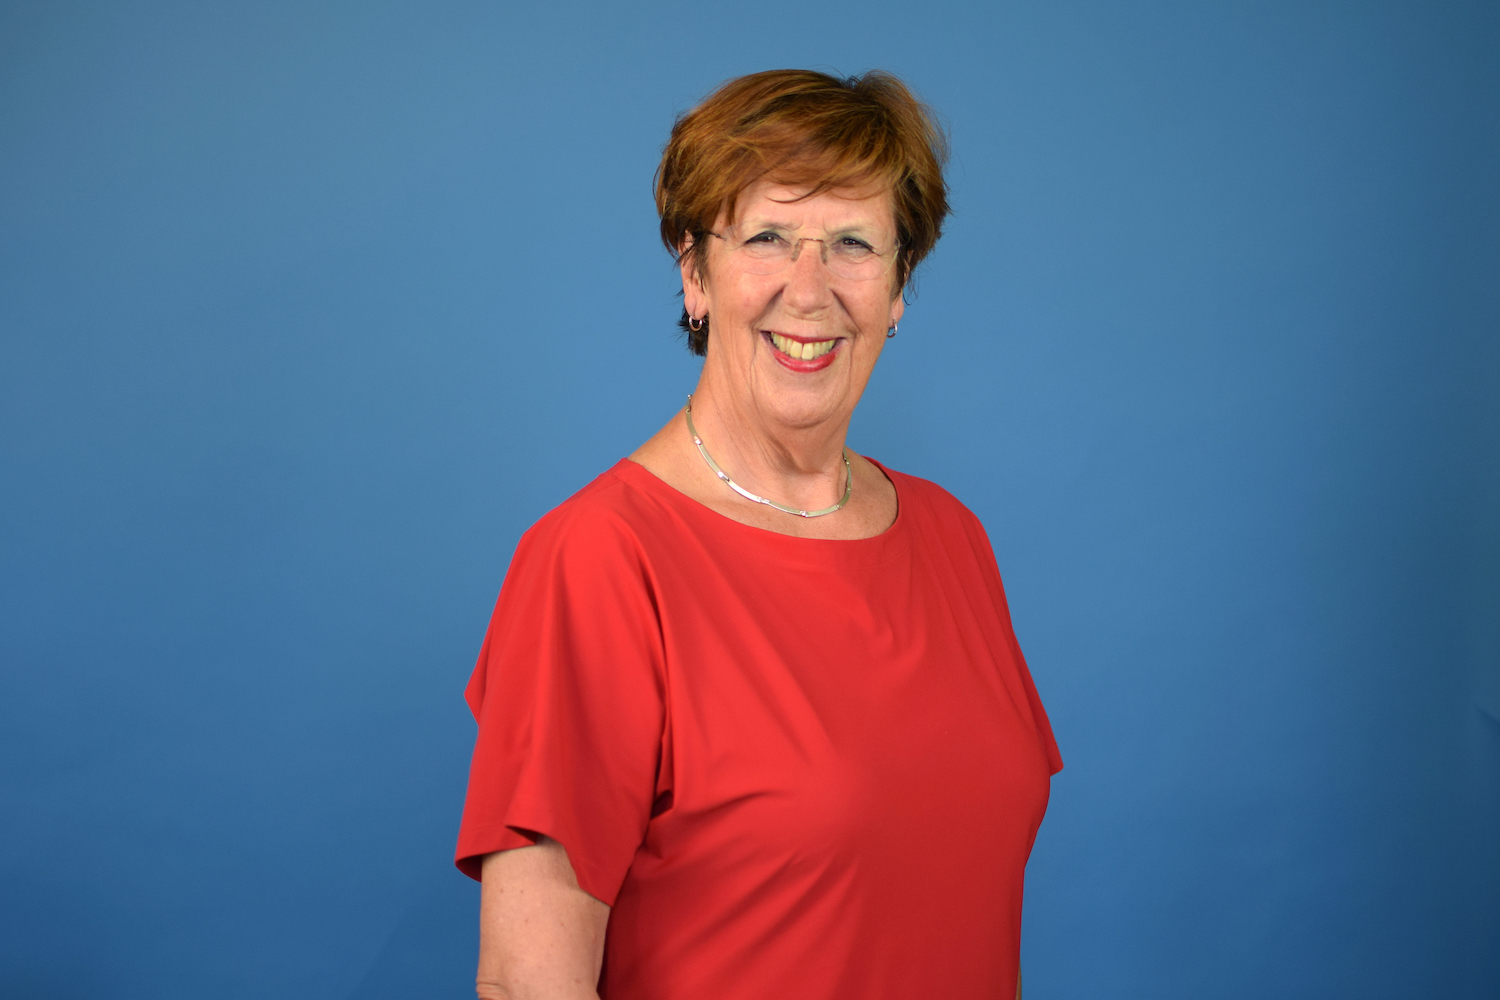 Annemarie Jorritsma-Lebbink VVD